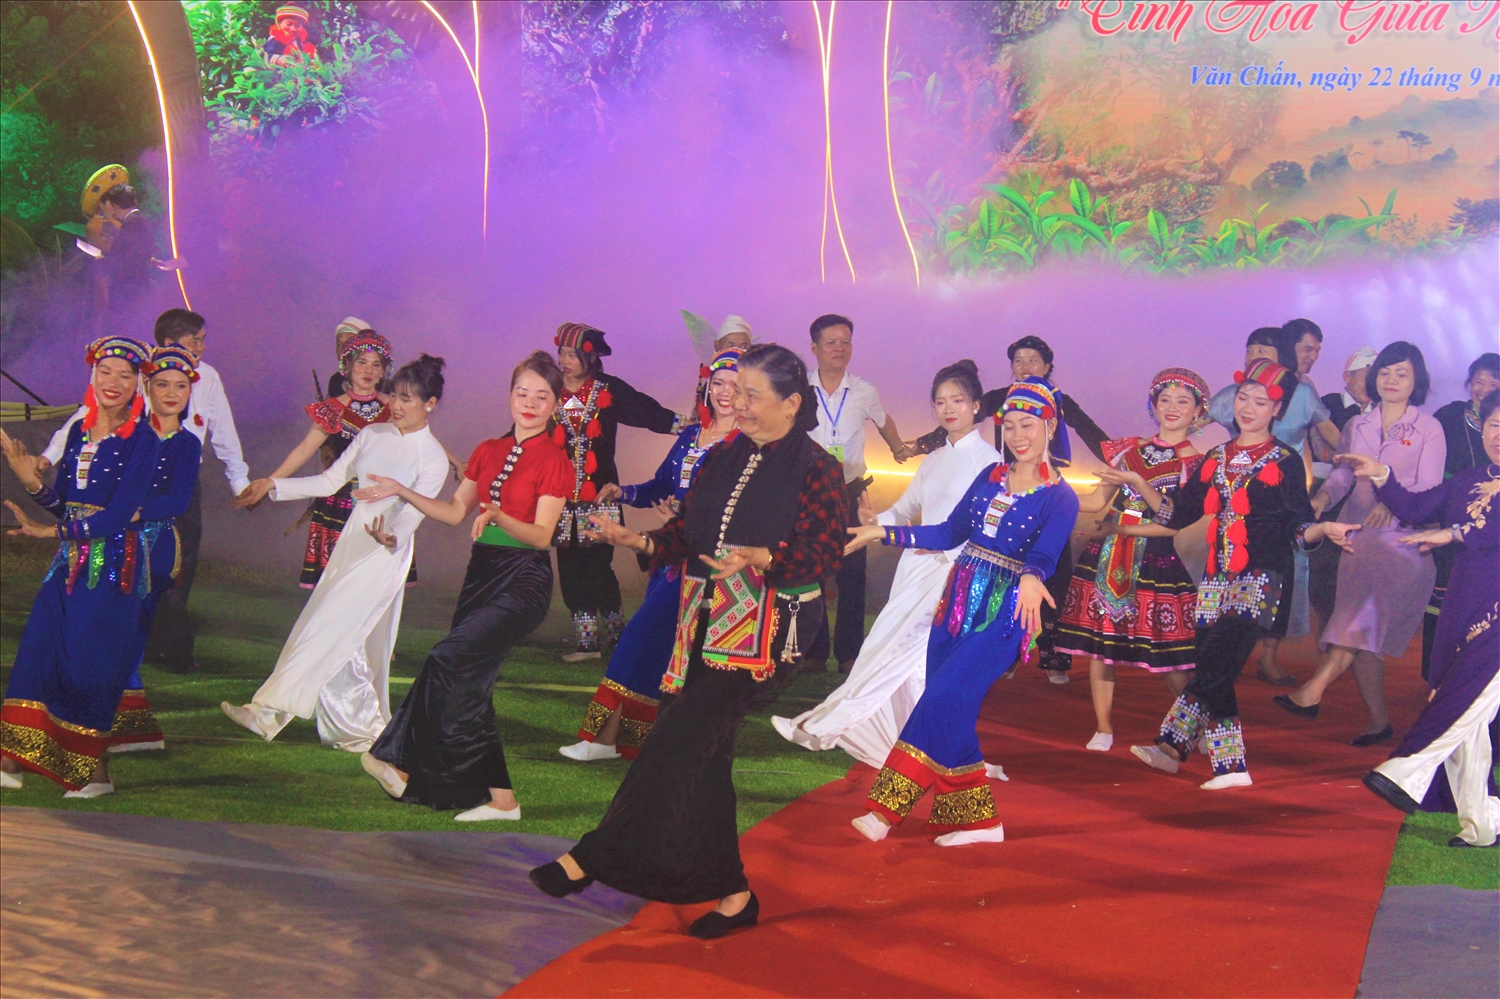 Bà Tòng Thị Phóng, nguyên Ủy viên Bộ Chính trị, nguyên Phó Chủ tịch Thường trực Quốc hội biểu diễn điệu múa Kết đoàn cùng đồng bào các dân tộc của tỉnh Yên Bái.